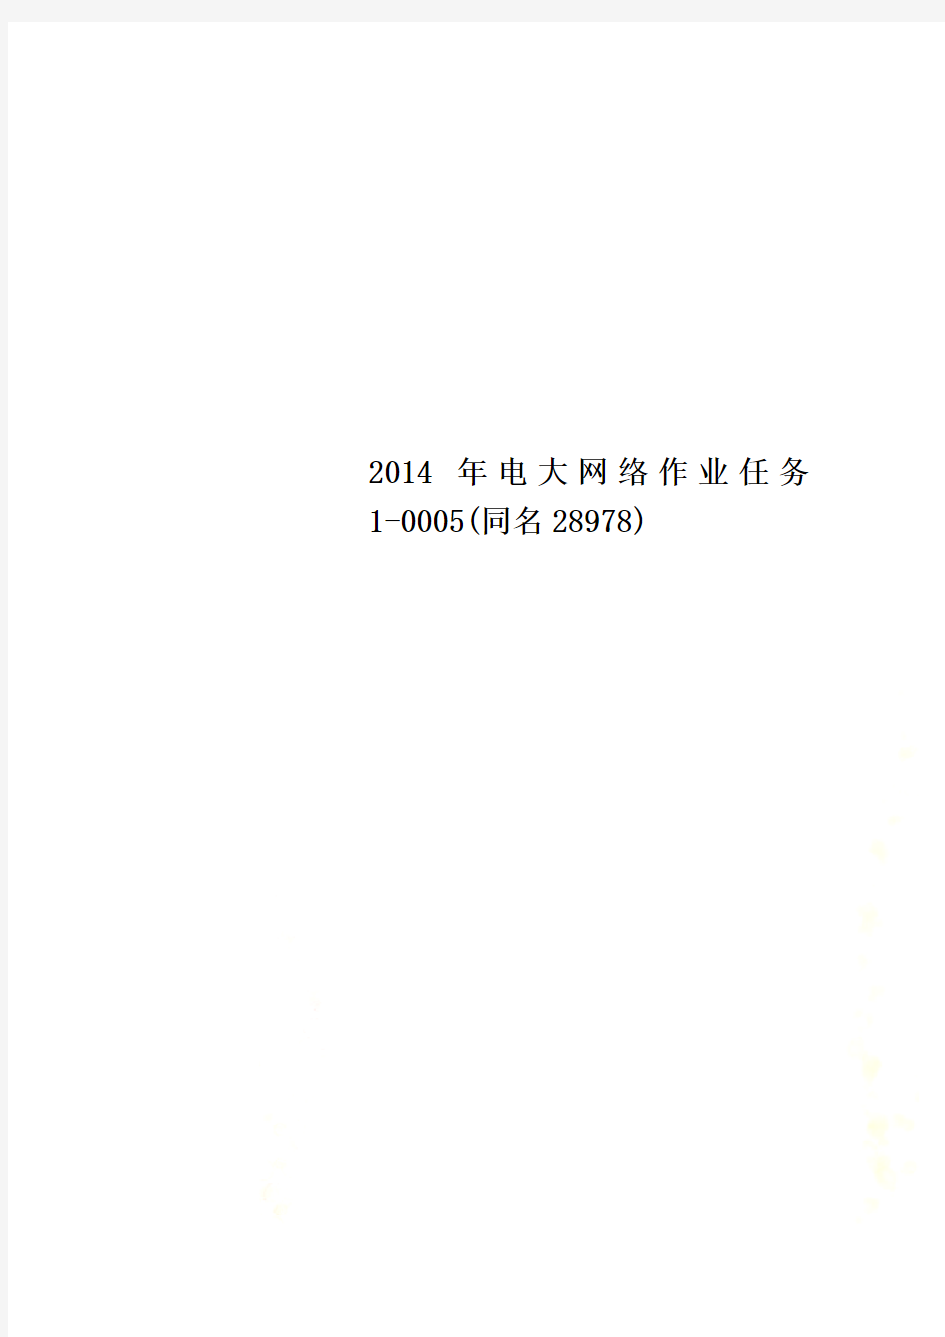 2014年电大网络作业任务1-0005(同名28978)